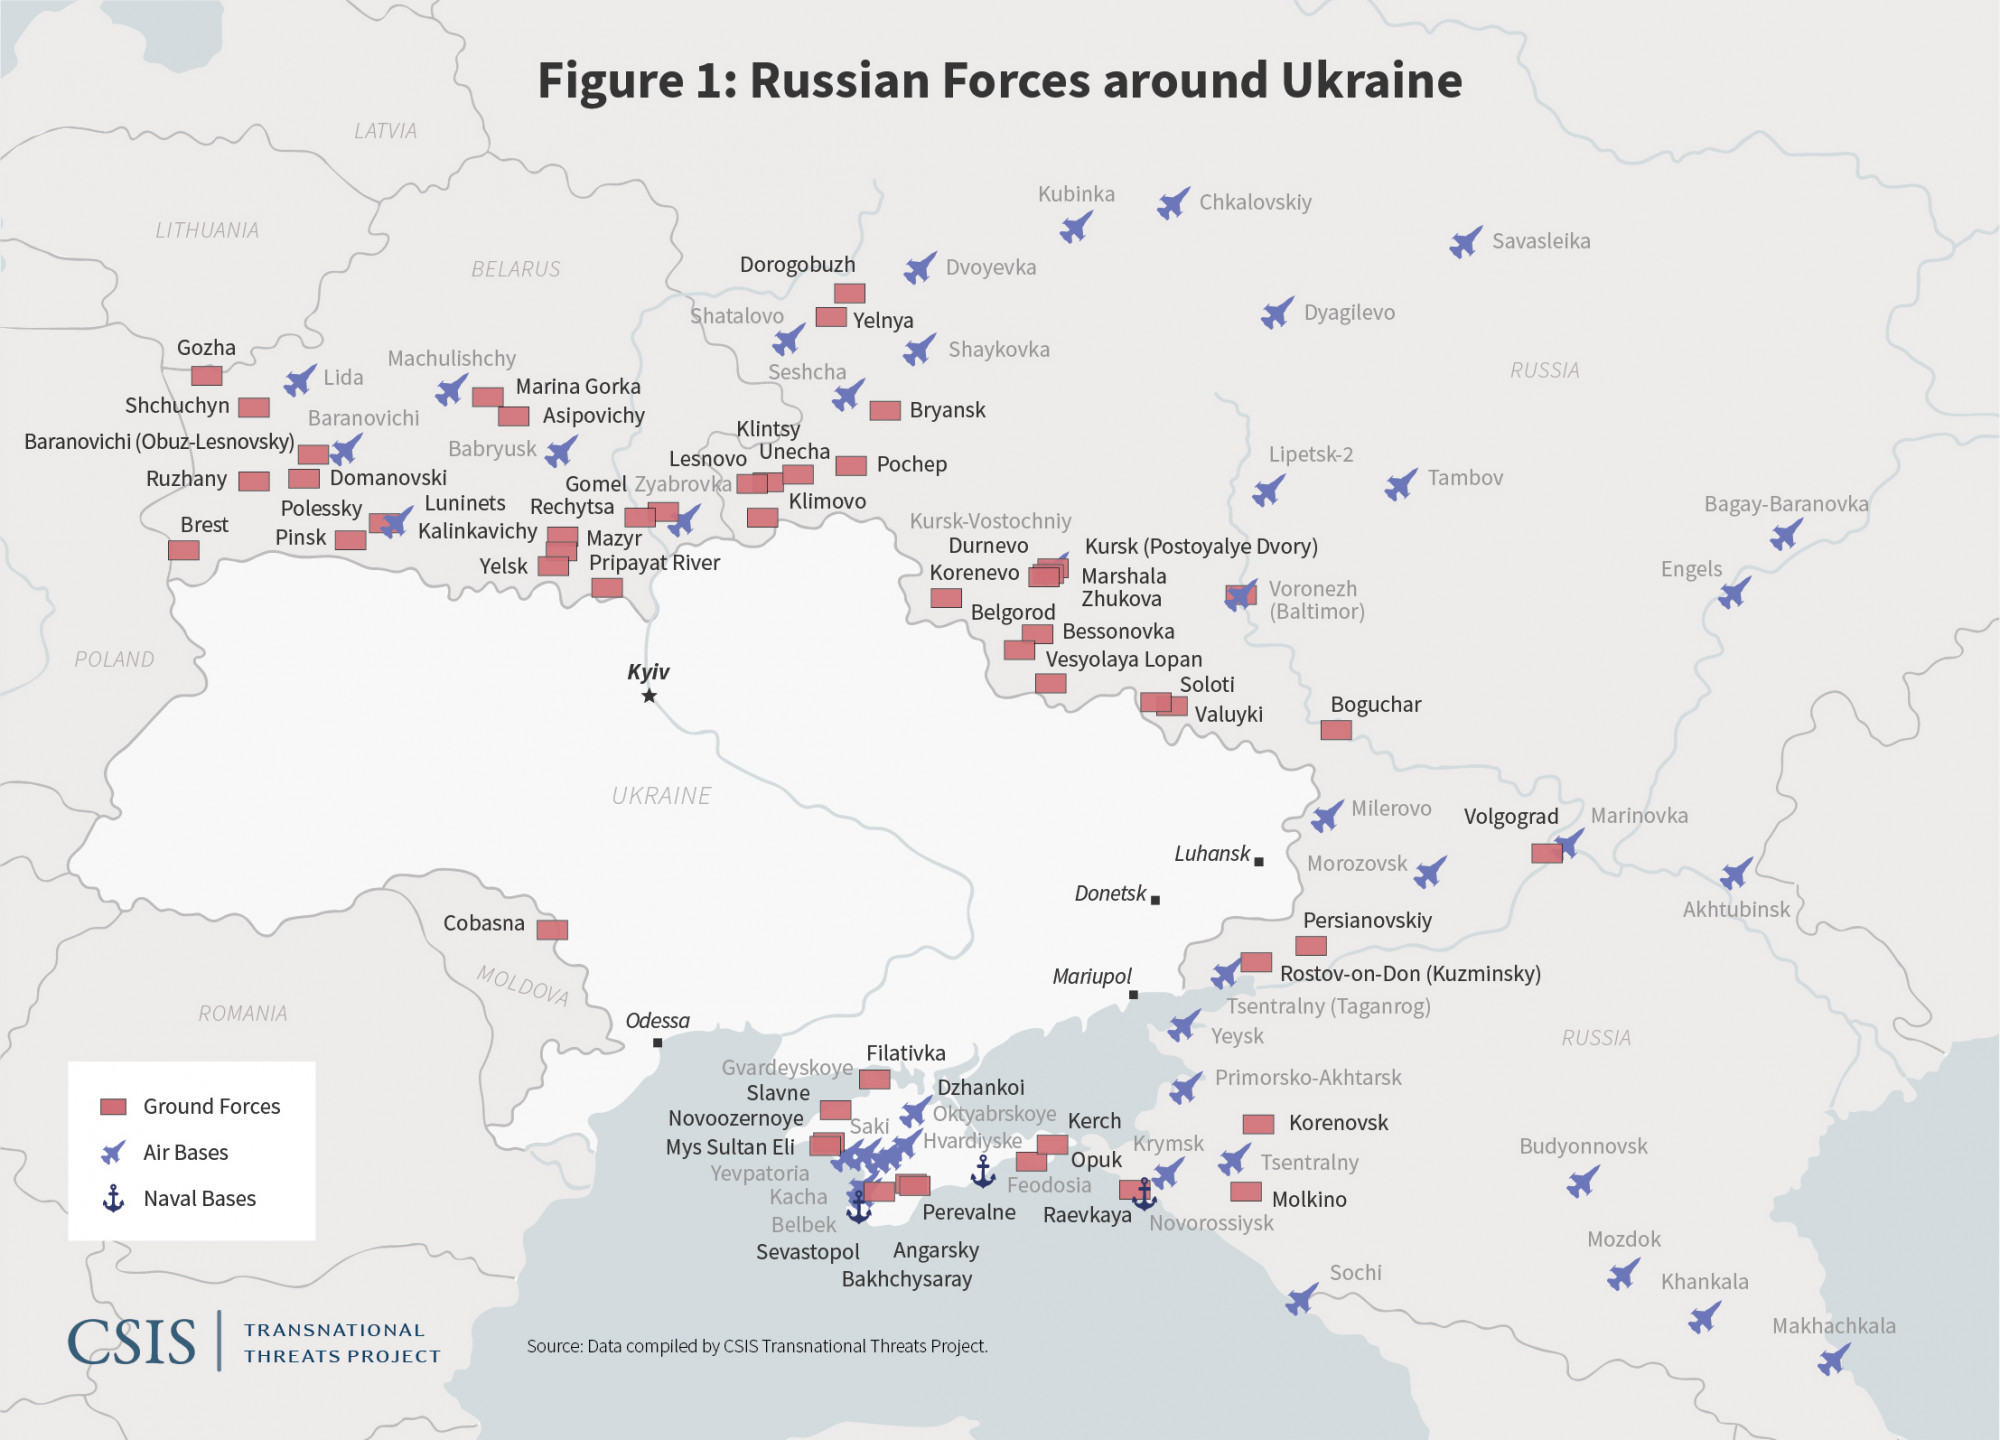 Sơ đồ từ Trung tâm Nghiên cứu Chiến lược và Quốc tế cho thấy Nga hiện đang vây chặt ba phía của Ukraine